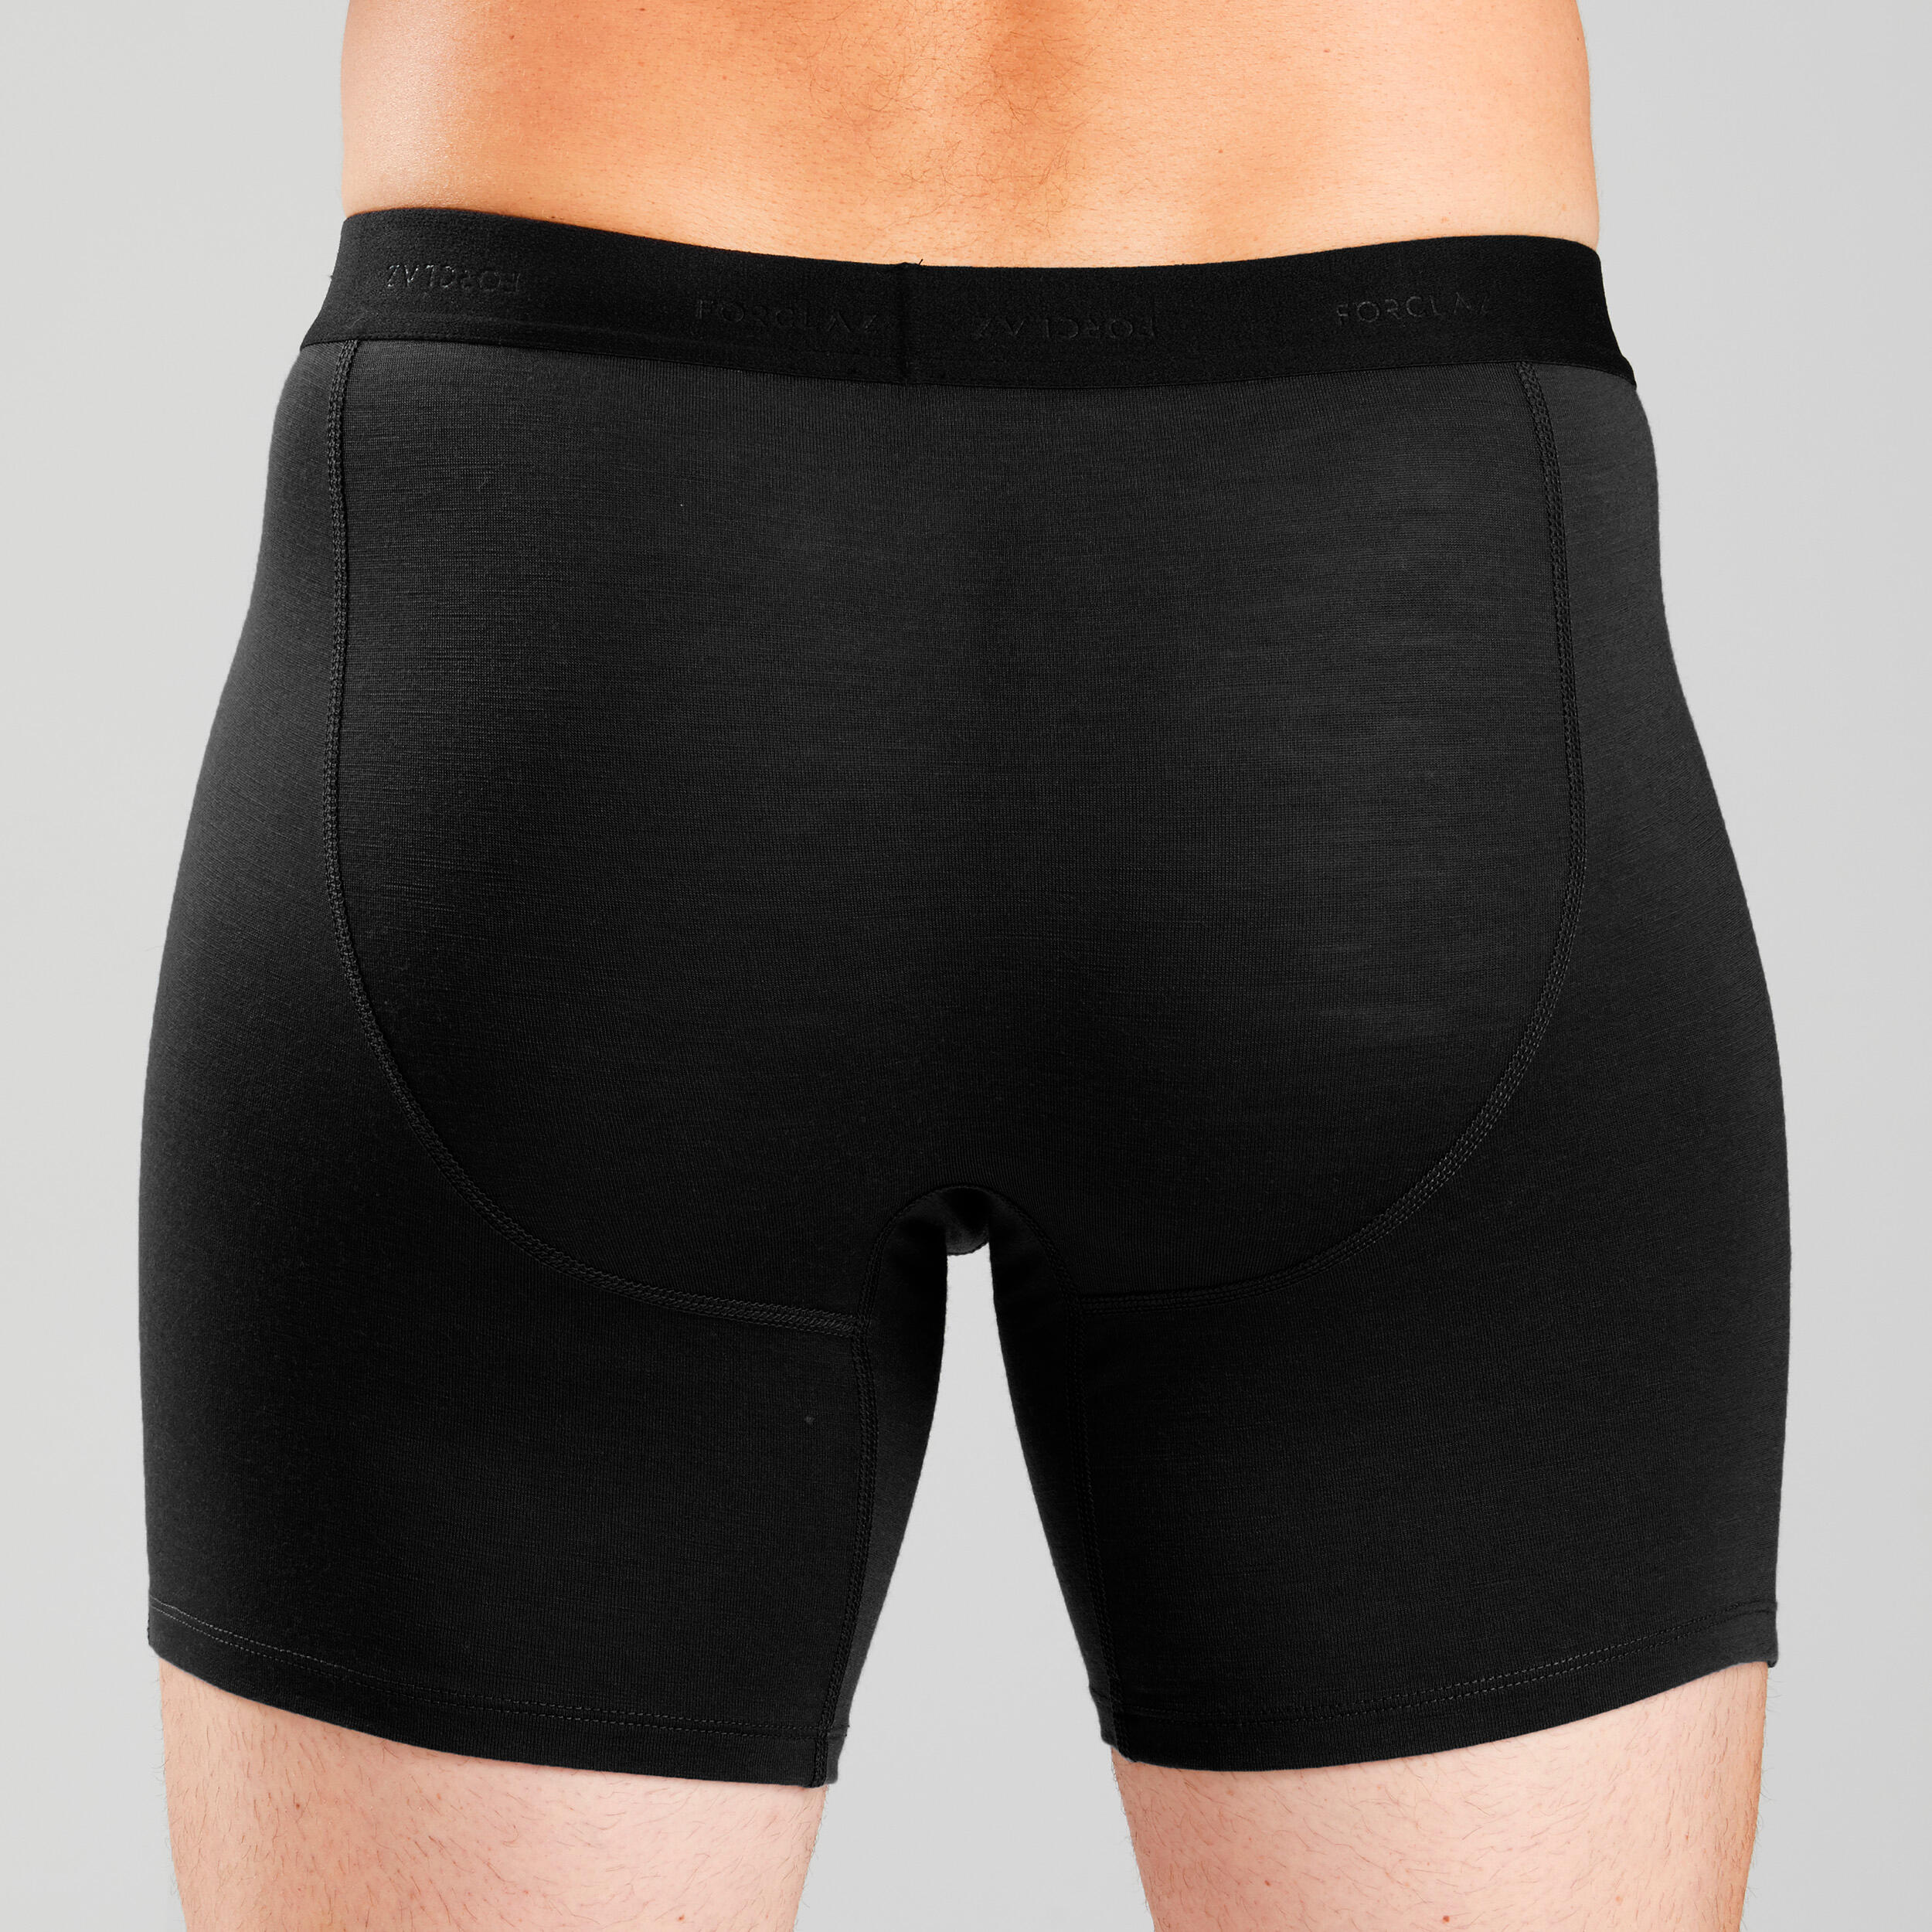 Men's Hiking Merino Boxer Shorts – MT 500 Black - Black - Forclaz